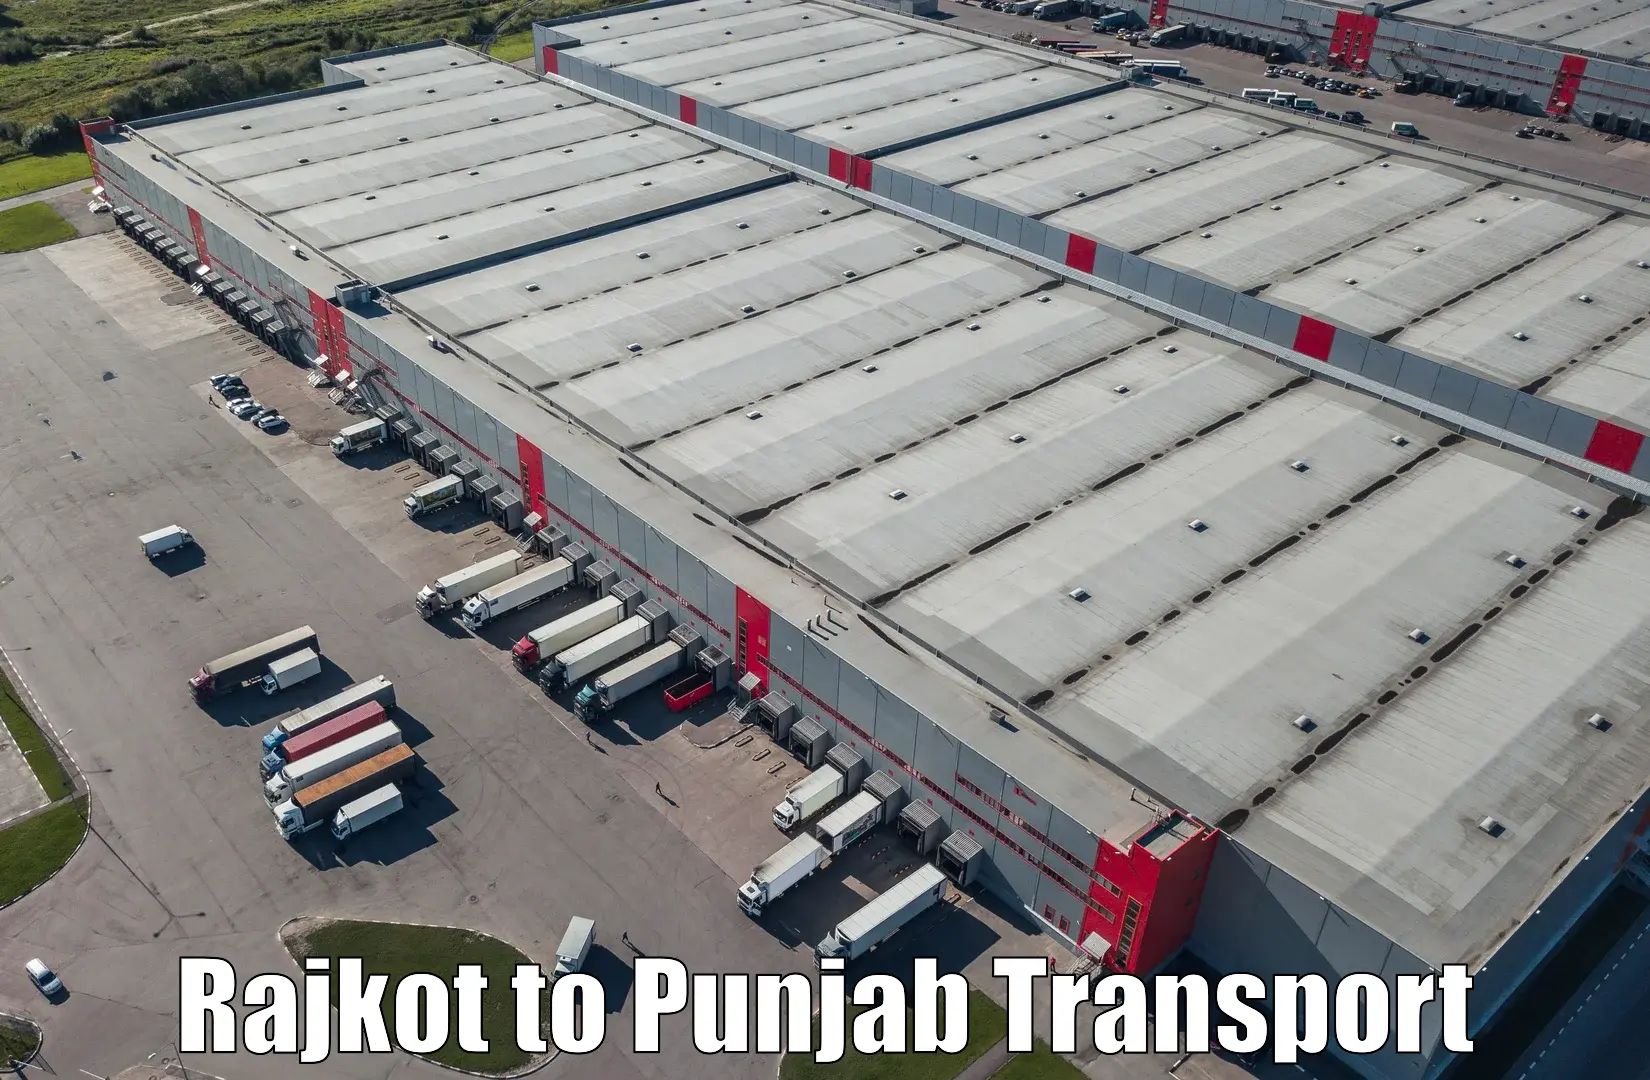 Online transport service Rajkot to Ropar